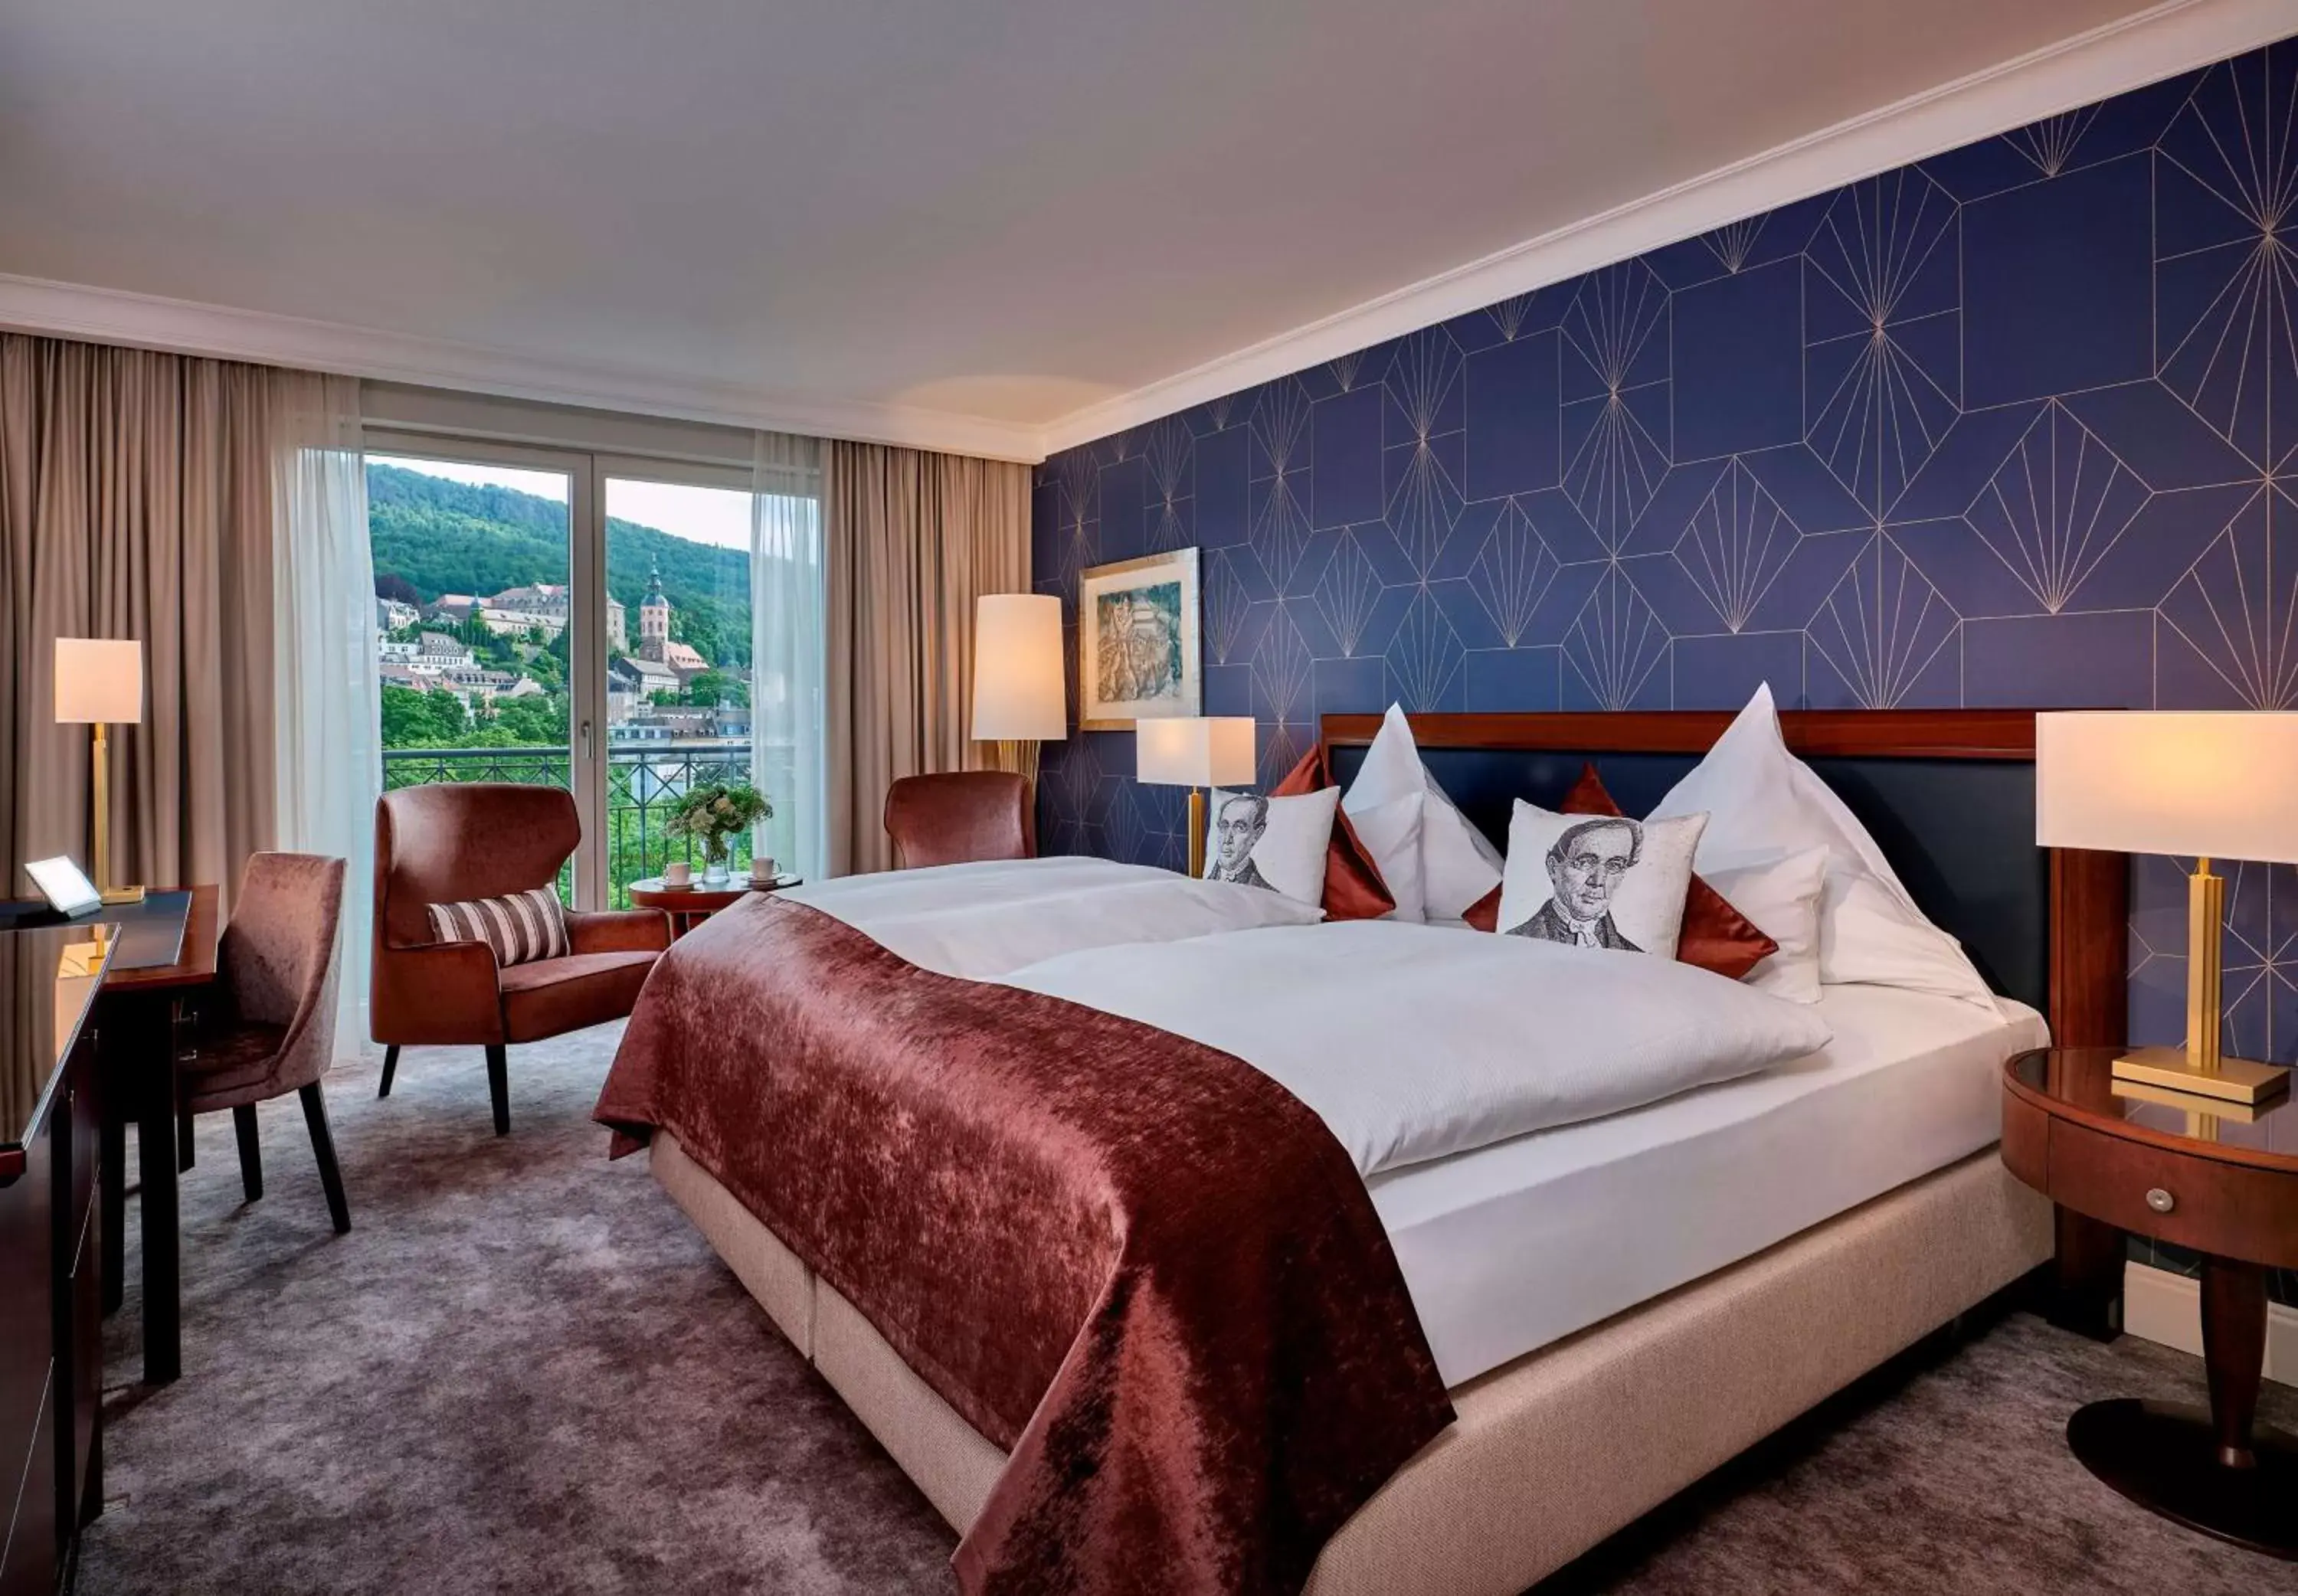 Bedroom in Maison Messmer - ein Mitglied der Hommage Luxury Hotels Collection